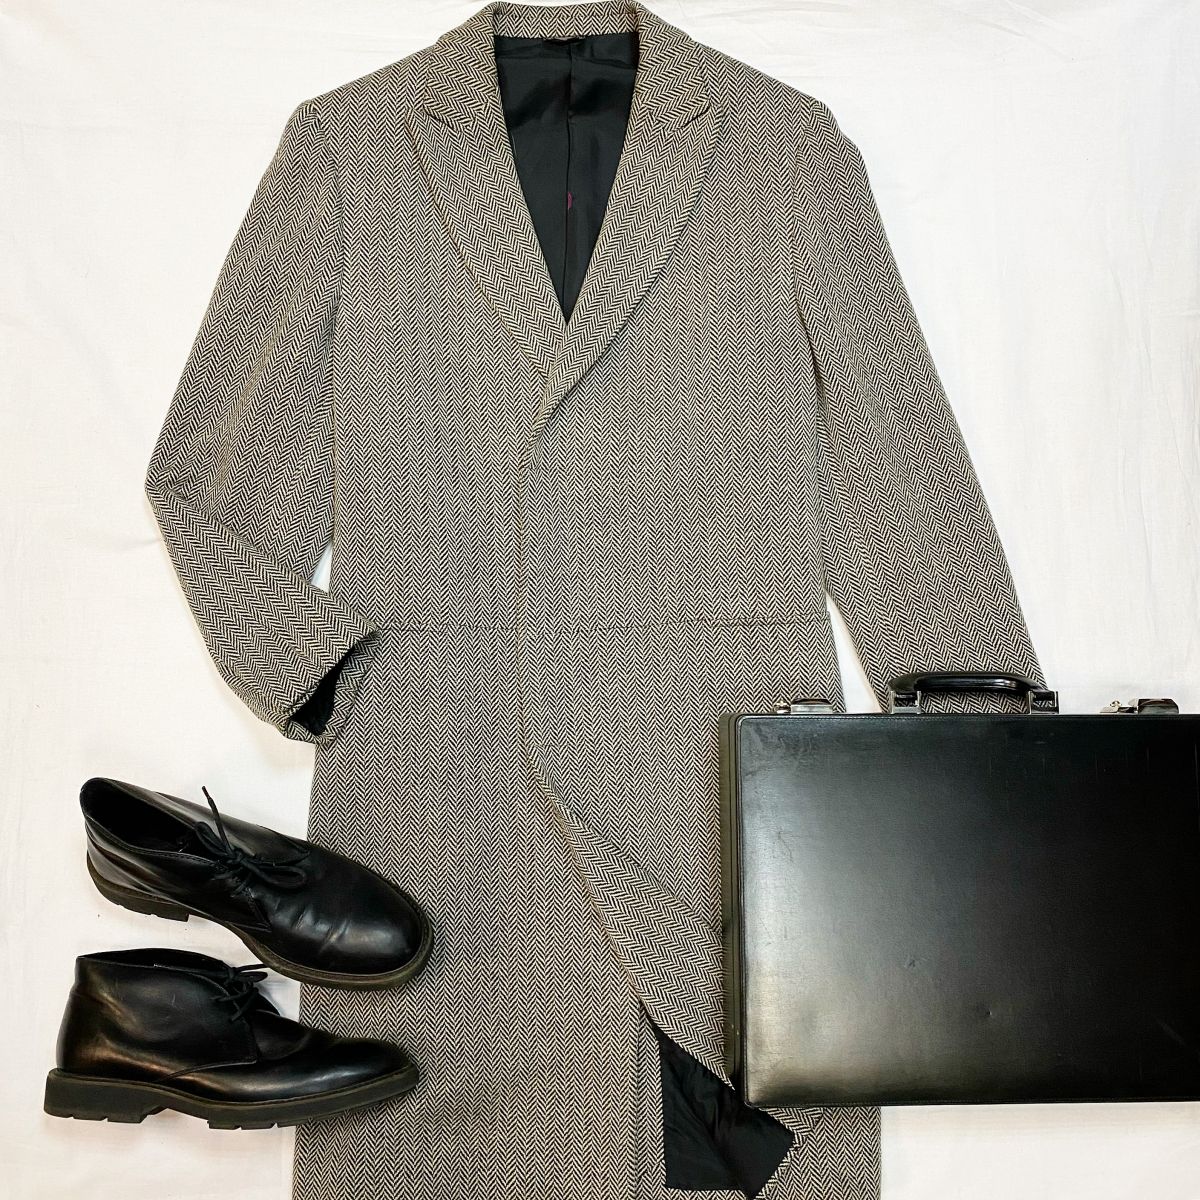 Пальто Versace размер 52 цена 23 078 руб Ботинки / зимние / Tods размер 43 цена 7 693 рубПортфель Cartier